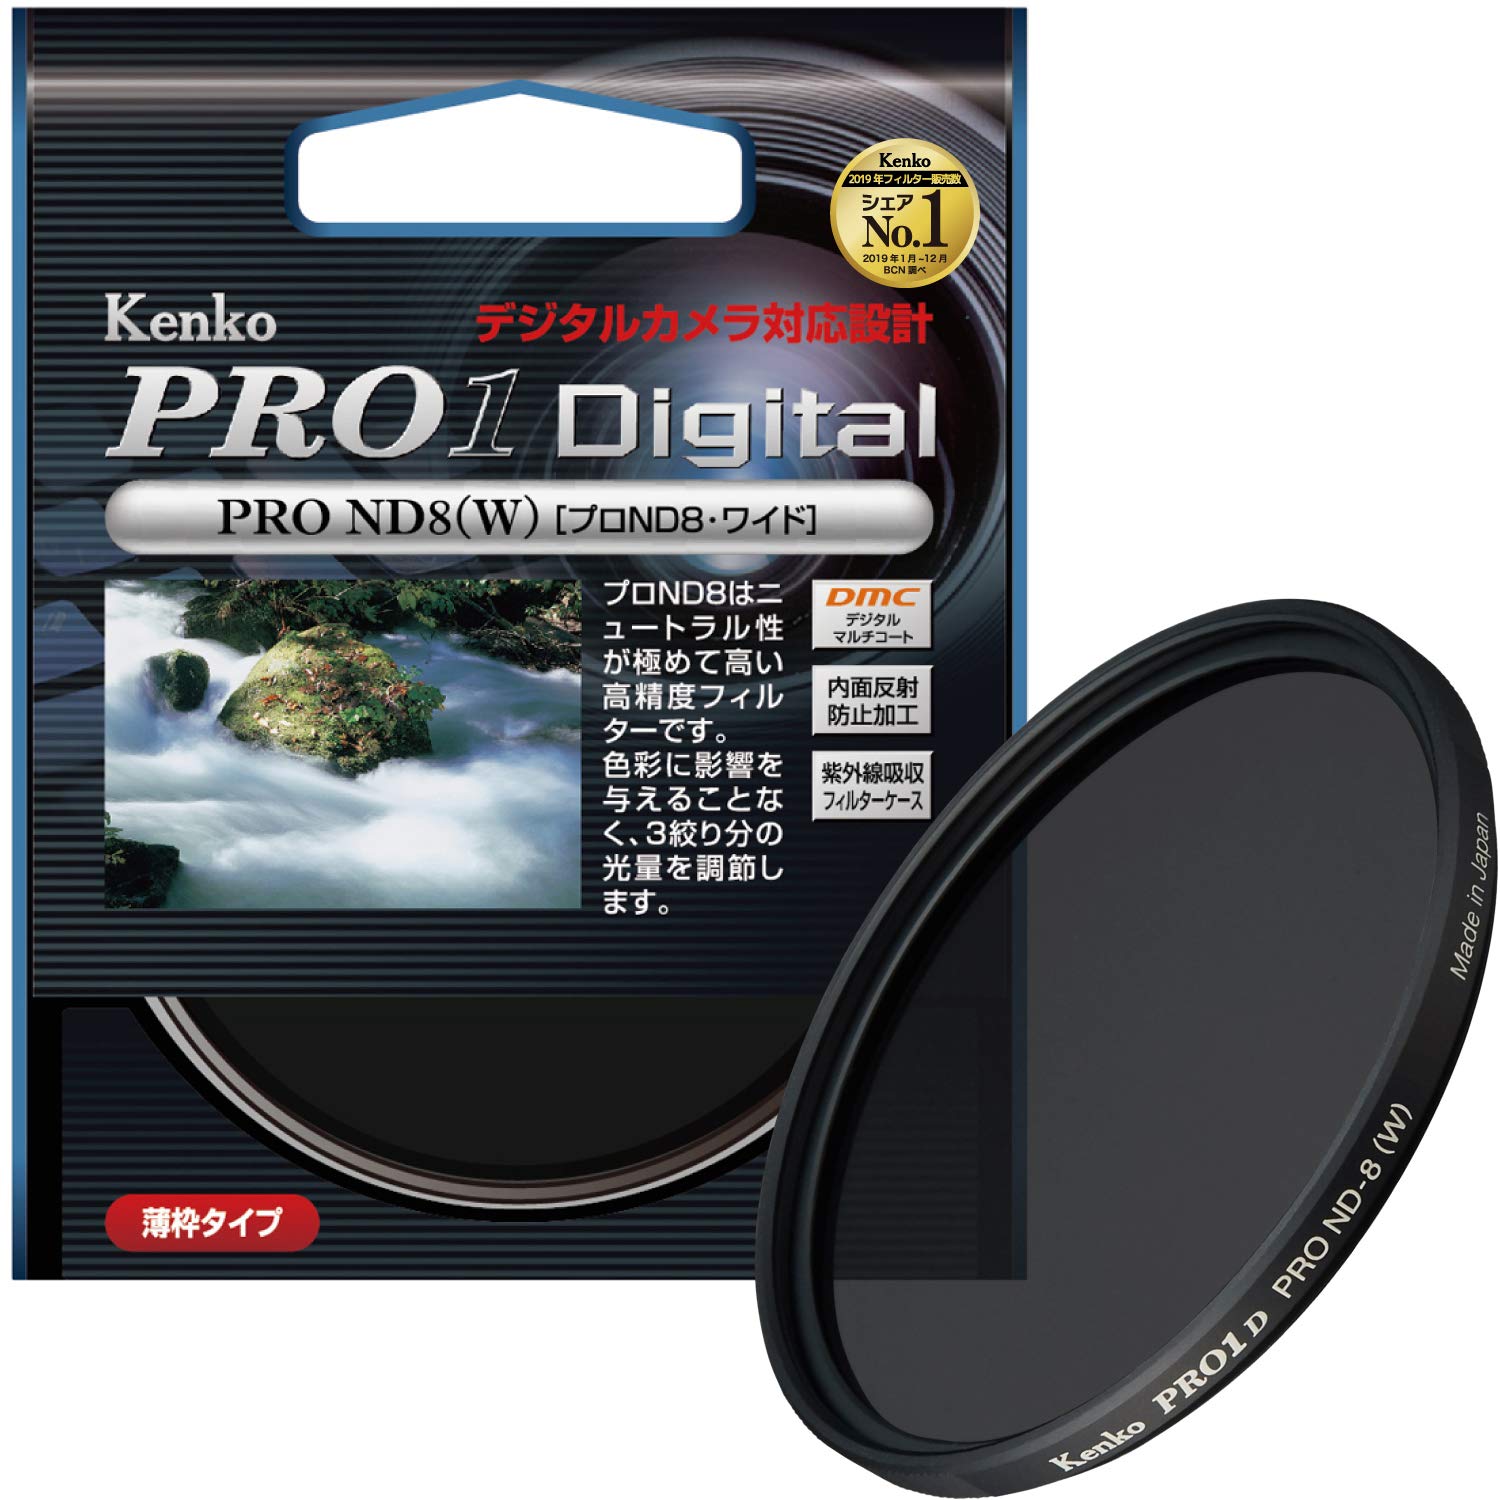 Kenko カメラ用フィルター PRO1D プロND8 (W) 82mm 光量調節用 282434